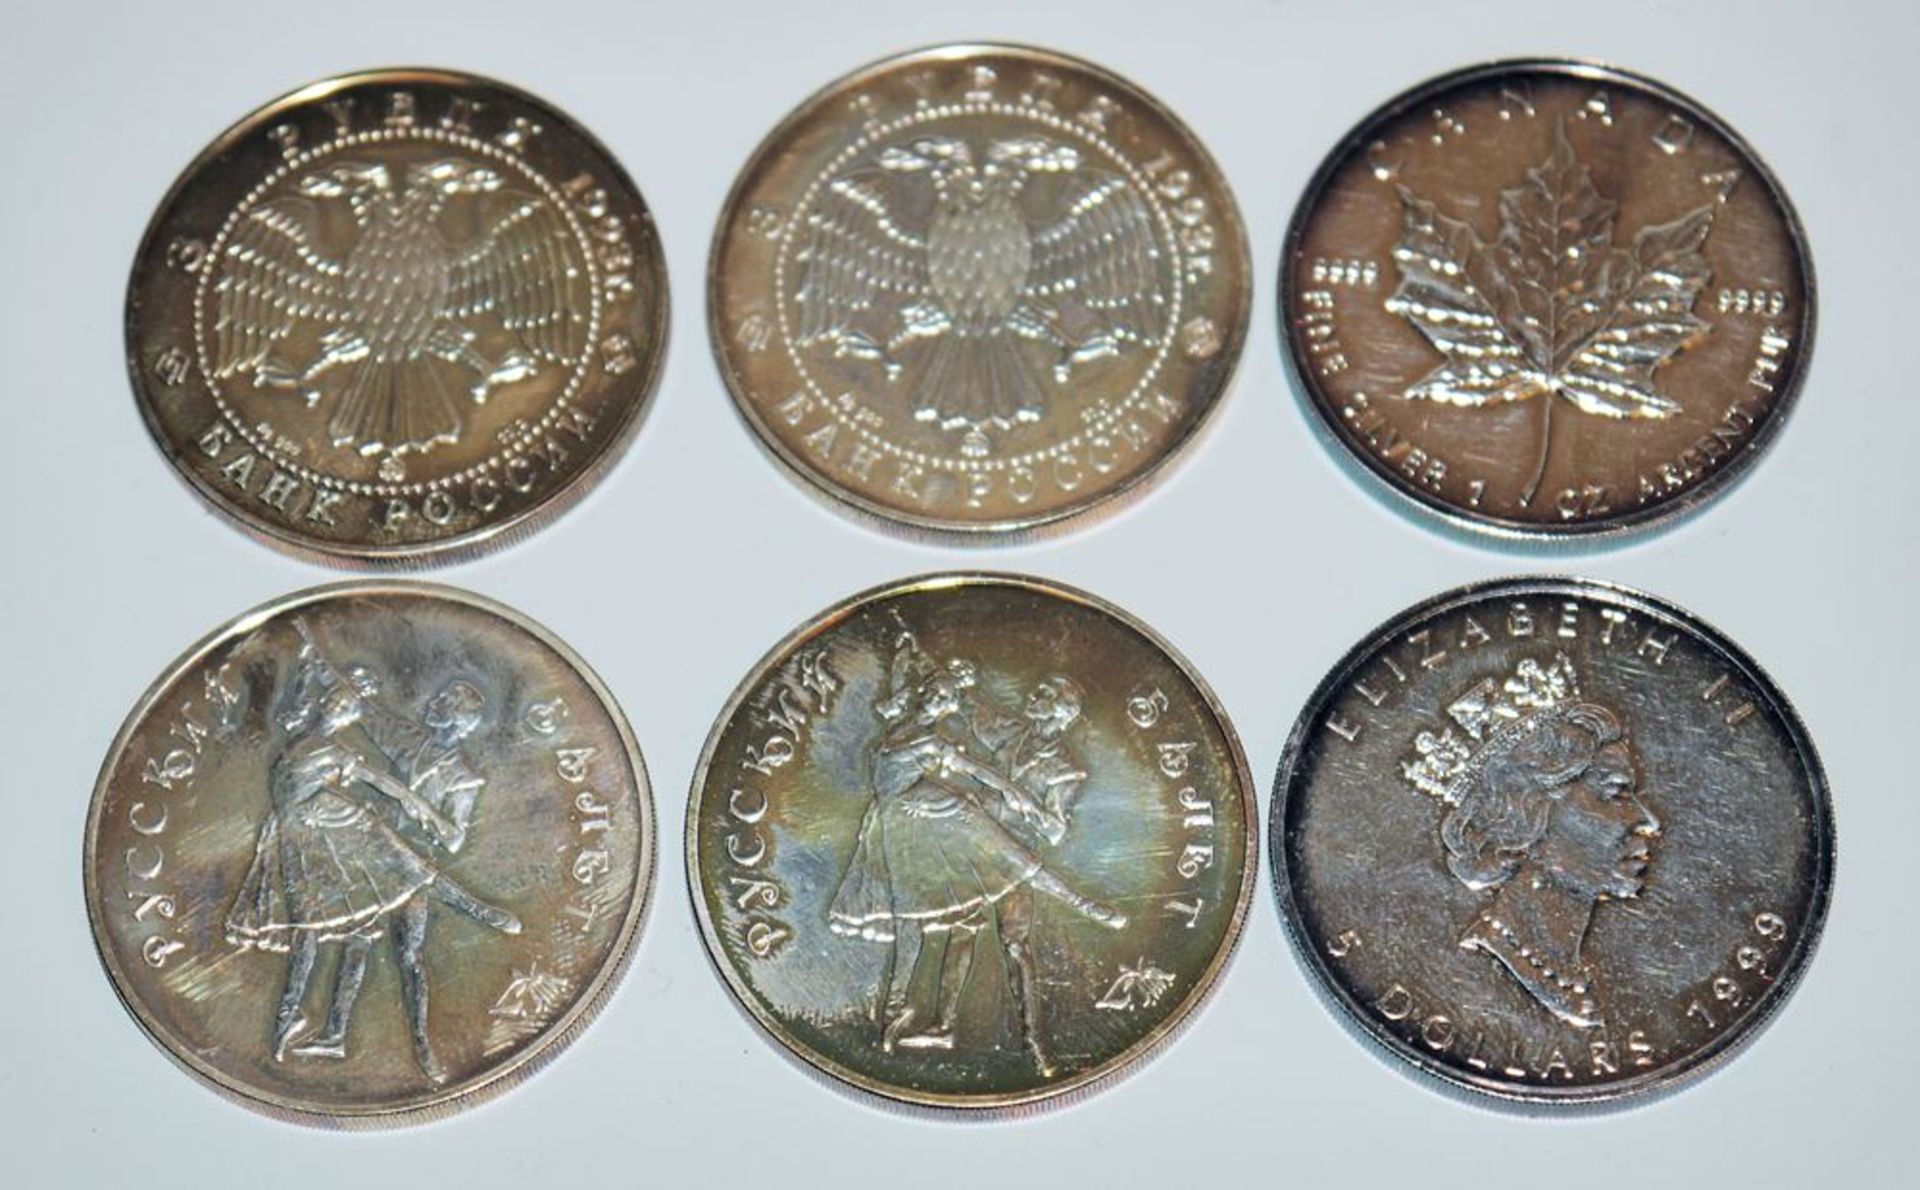 Sechs Silbermünzen, 2x 5 Dollar Kanada Maple Leaf 1999 u. 4x 3 russische Rubel, Russisches Ballett 